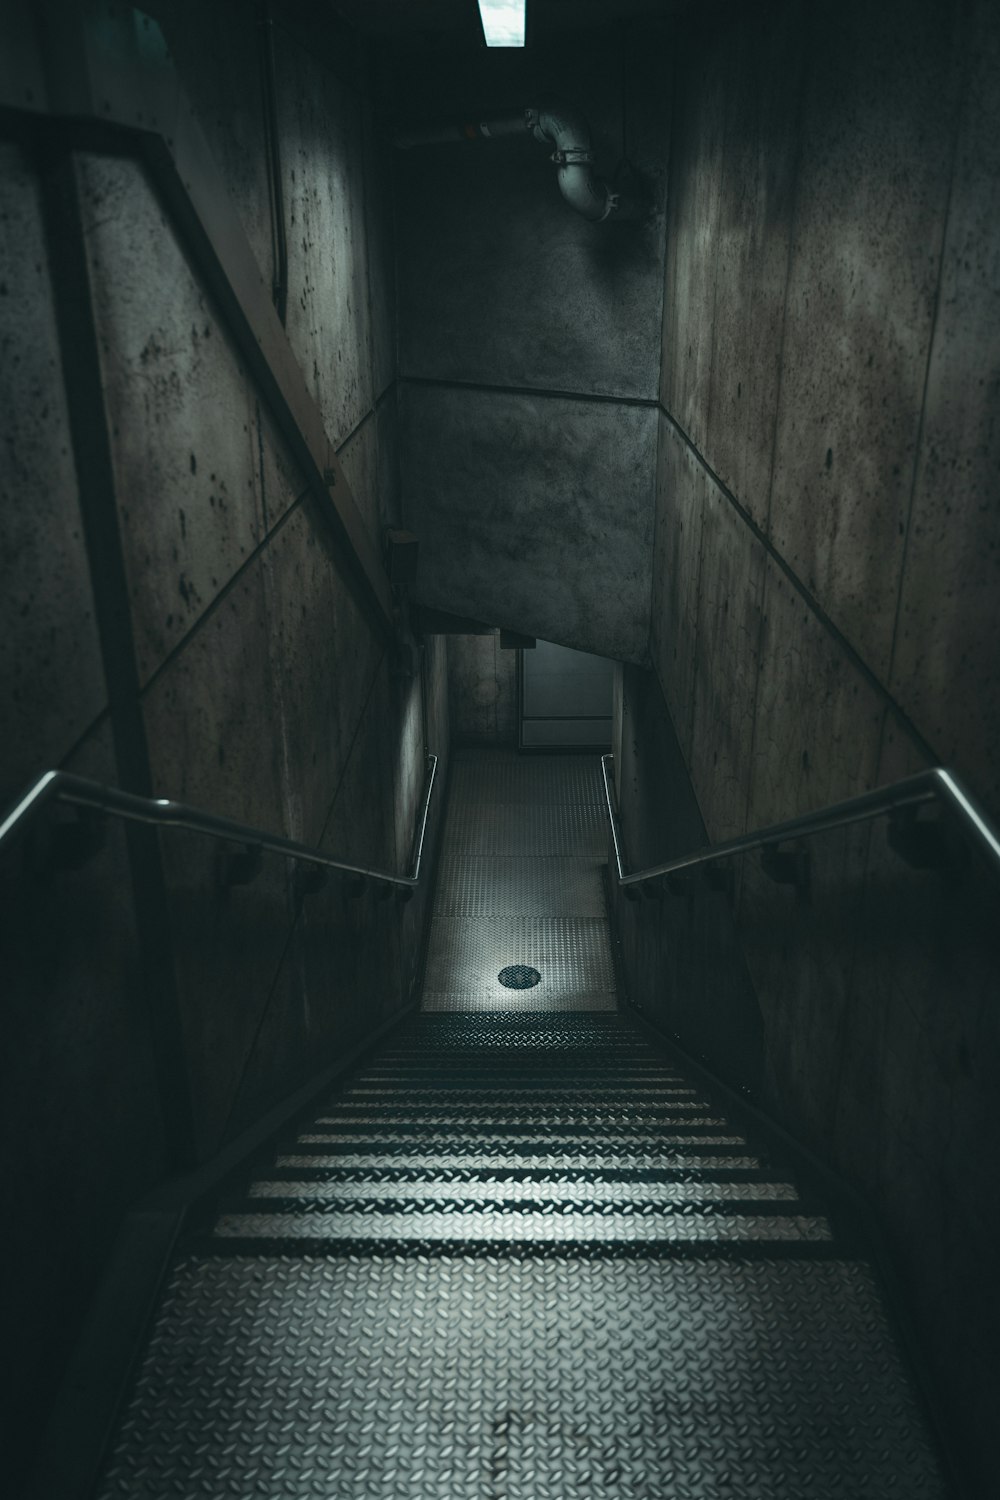 Una escalera oscura con una luz al final